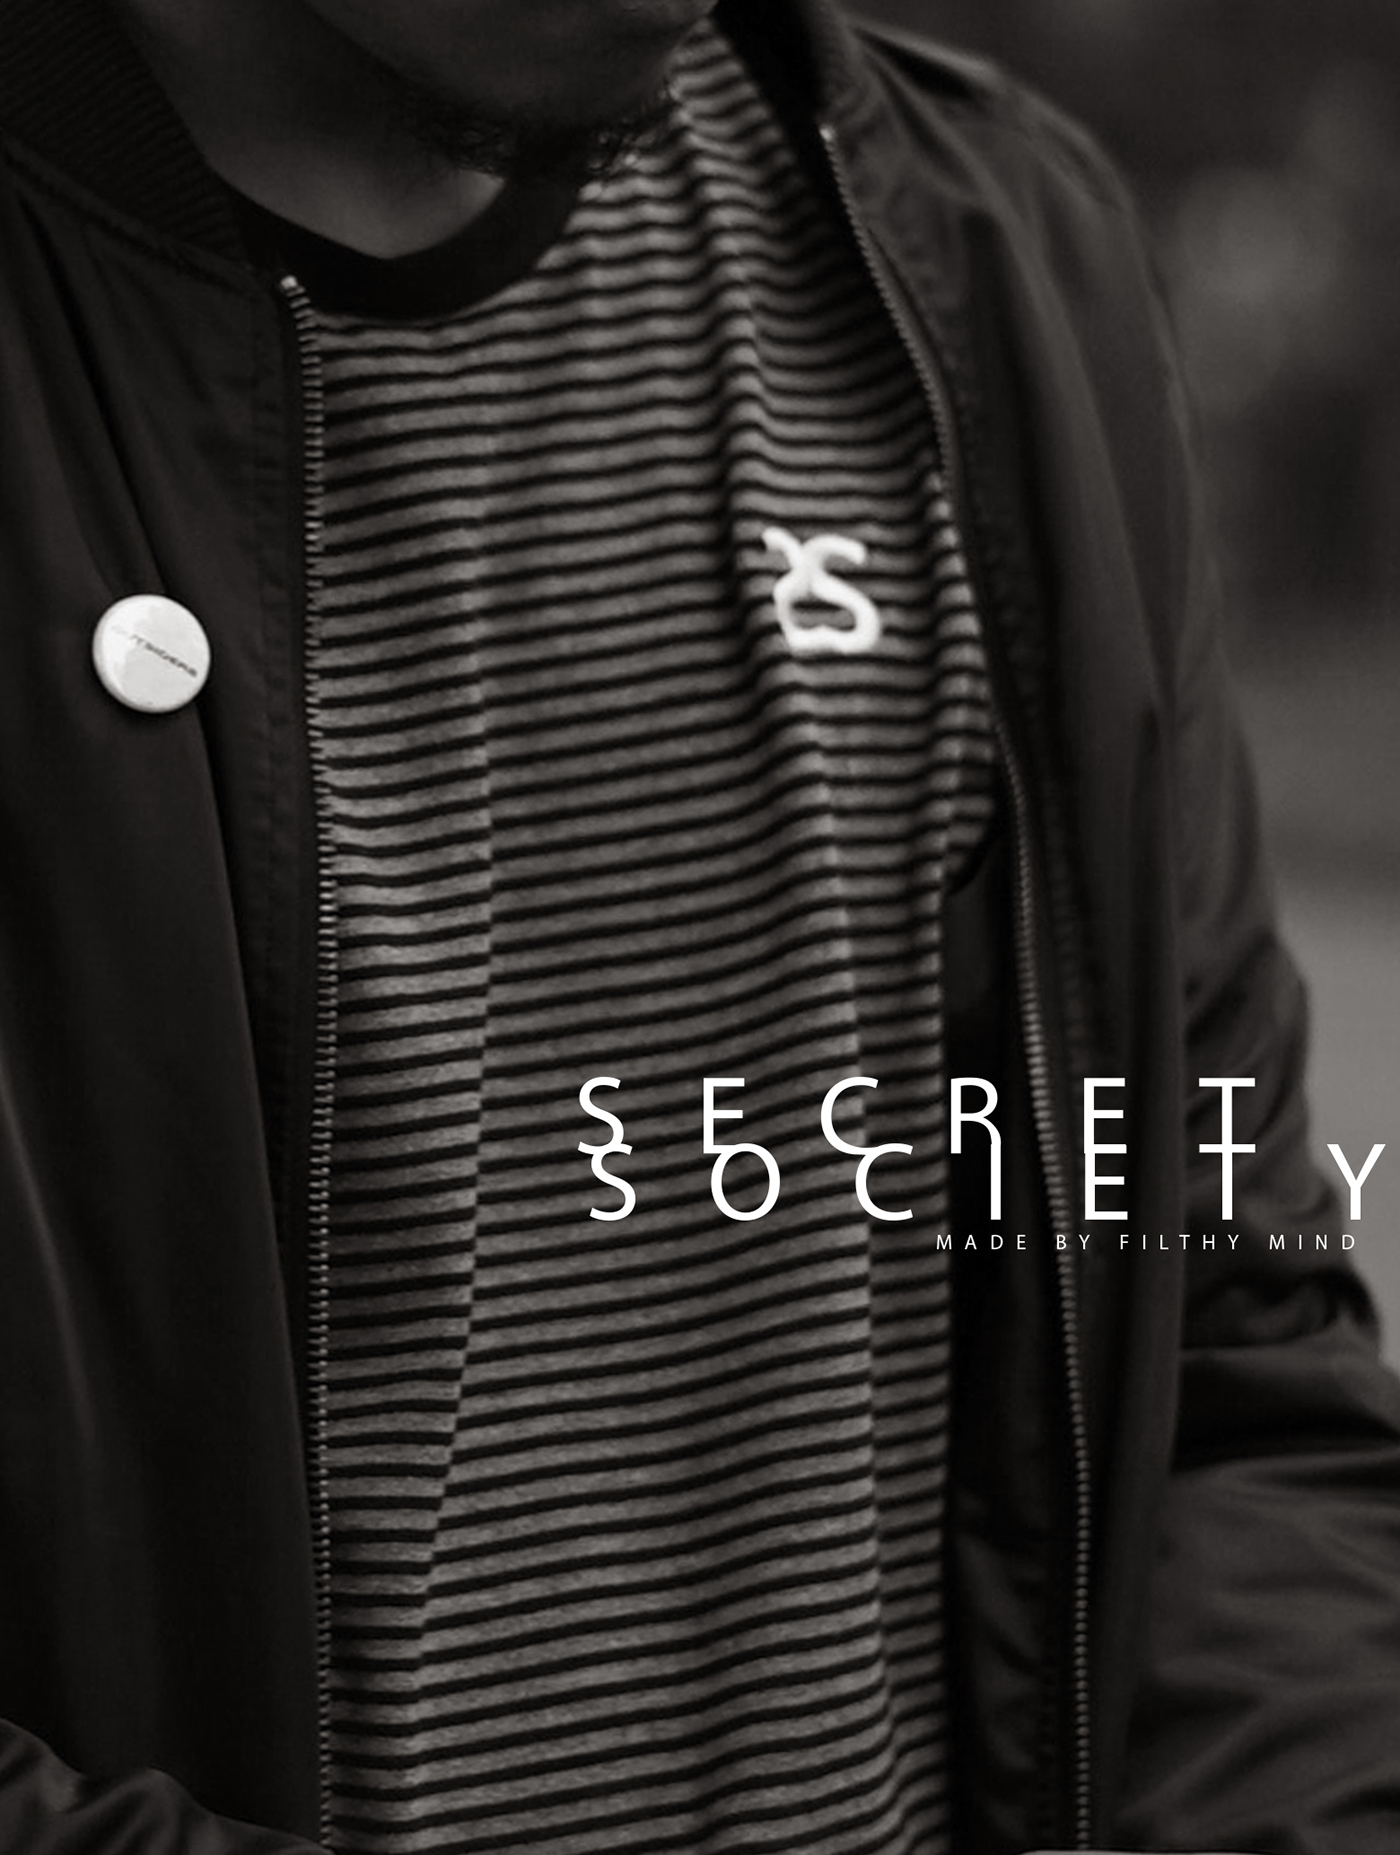 secret society